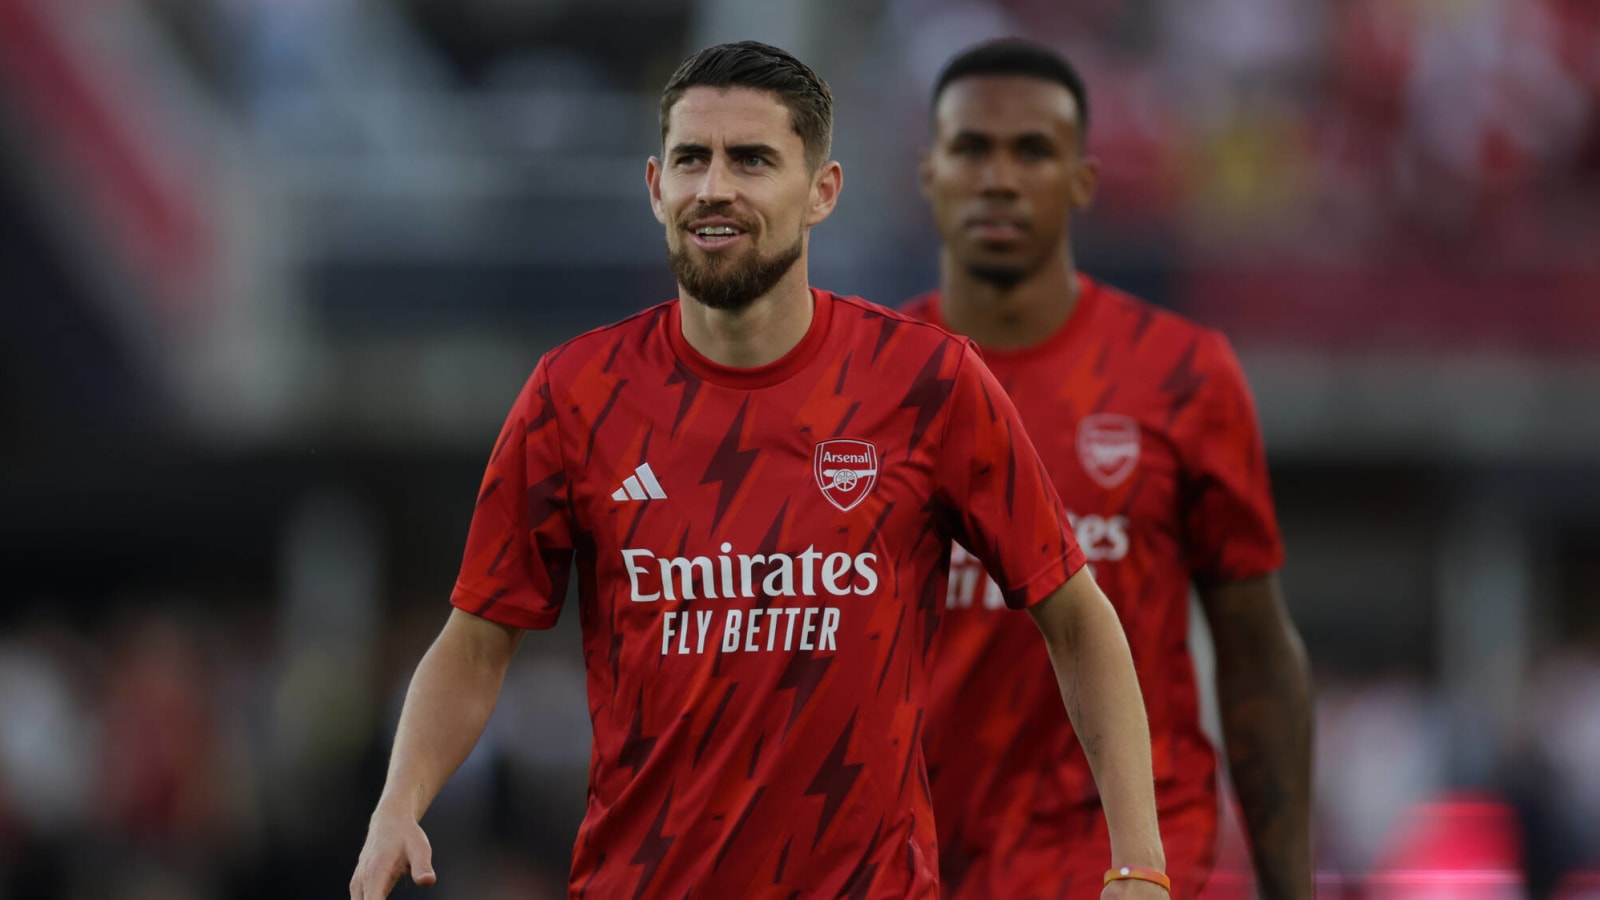 Arsenal man finally signs new deal despite Serie A interest